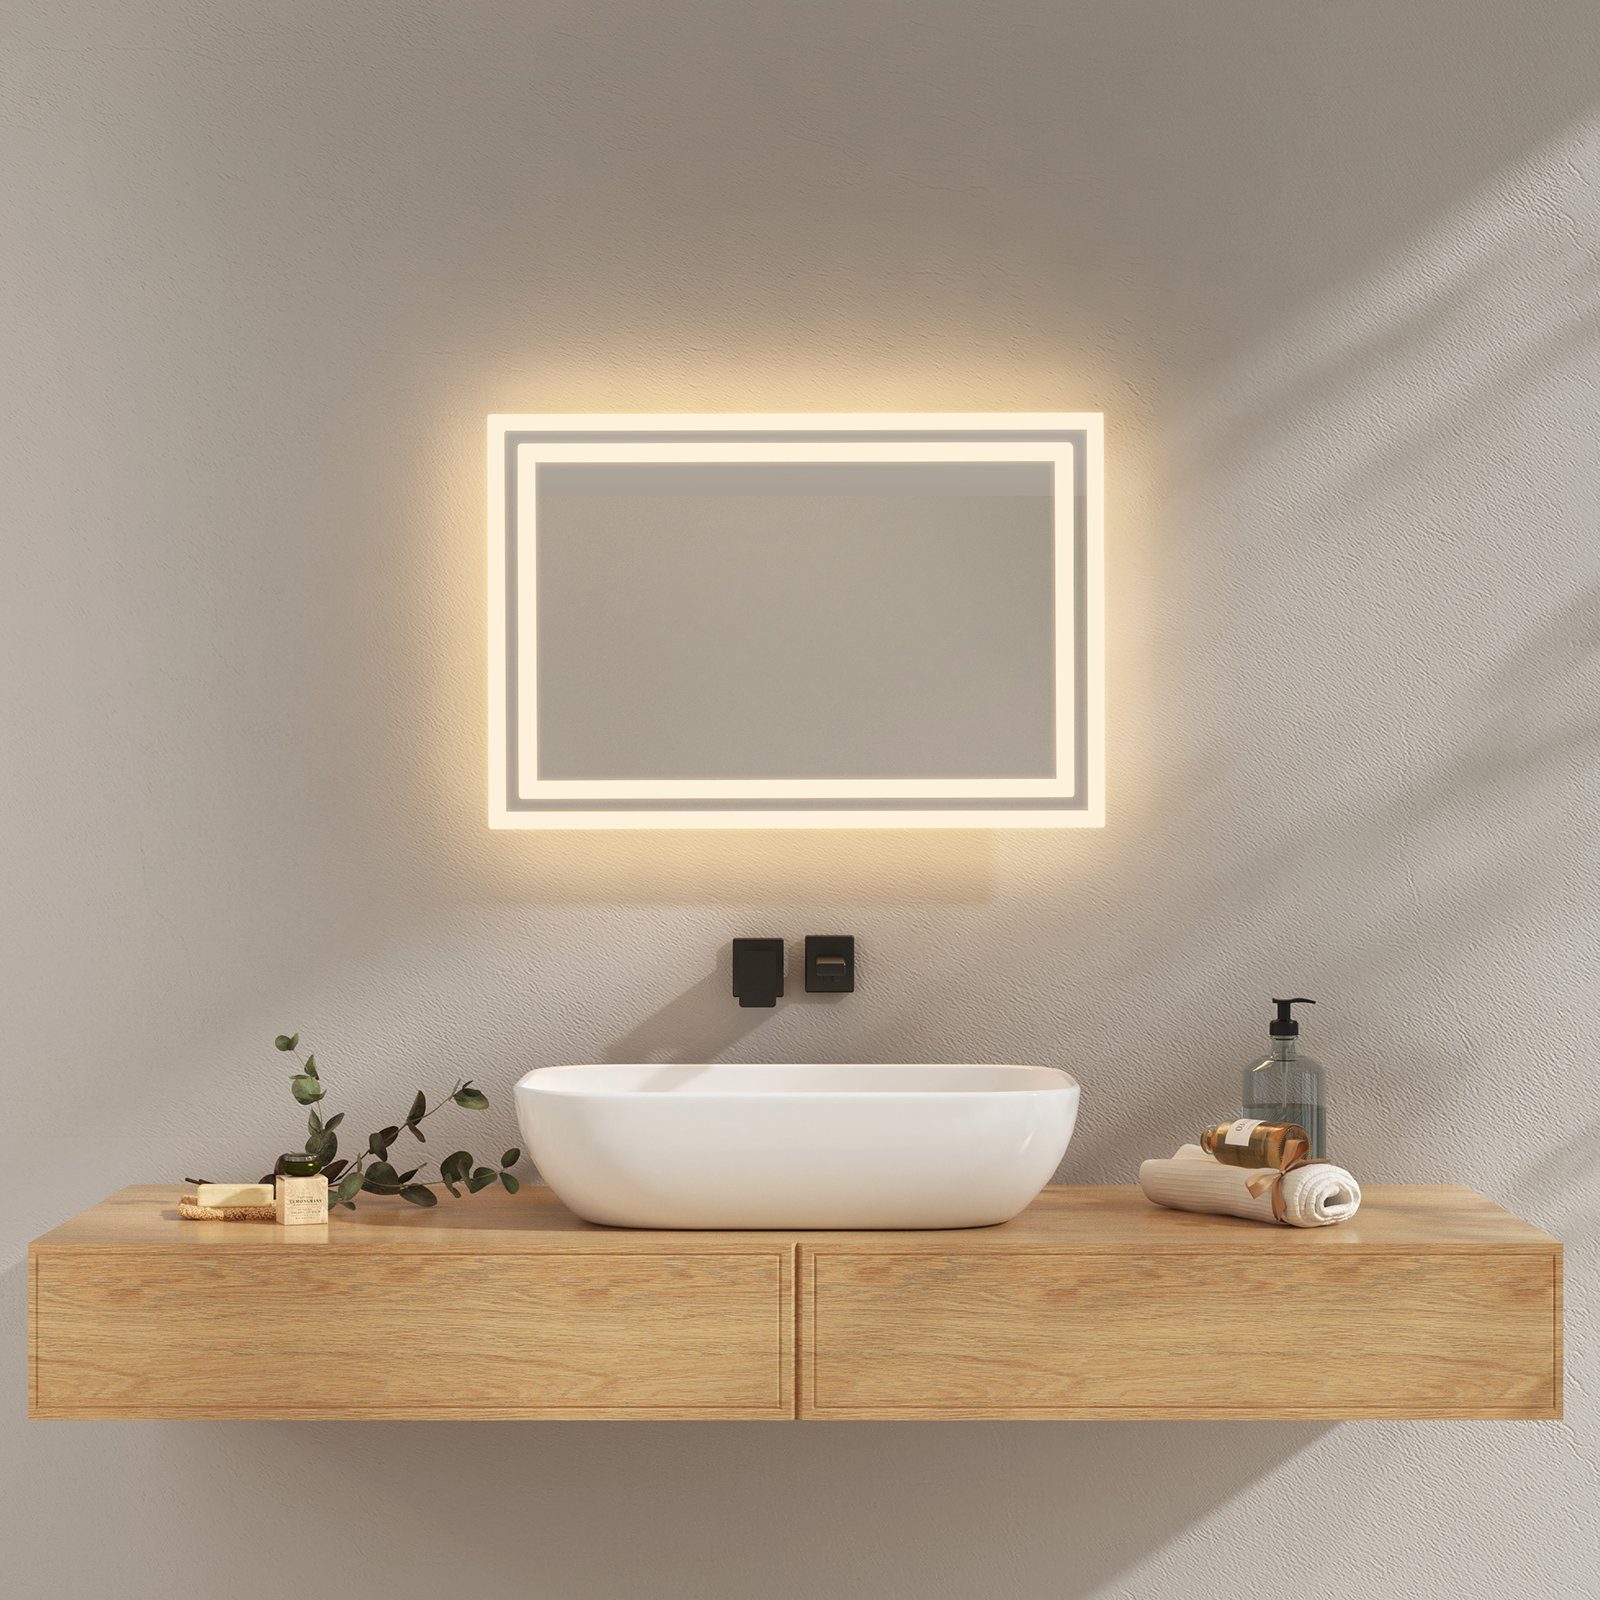 EMKE Badspiegel Badspiegel mit Beleuchtung LED Badezimmerspiegel  Wandspiegel, Beschlagfrei, 2 Farben des Lichts, Druckknopfschalter